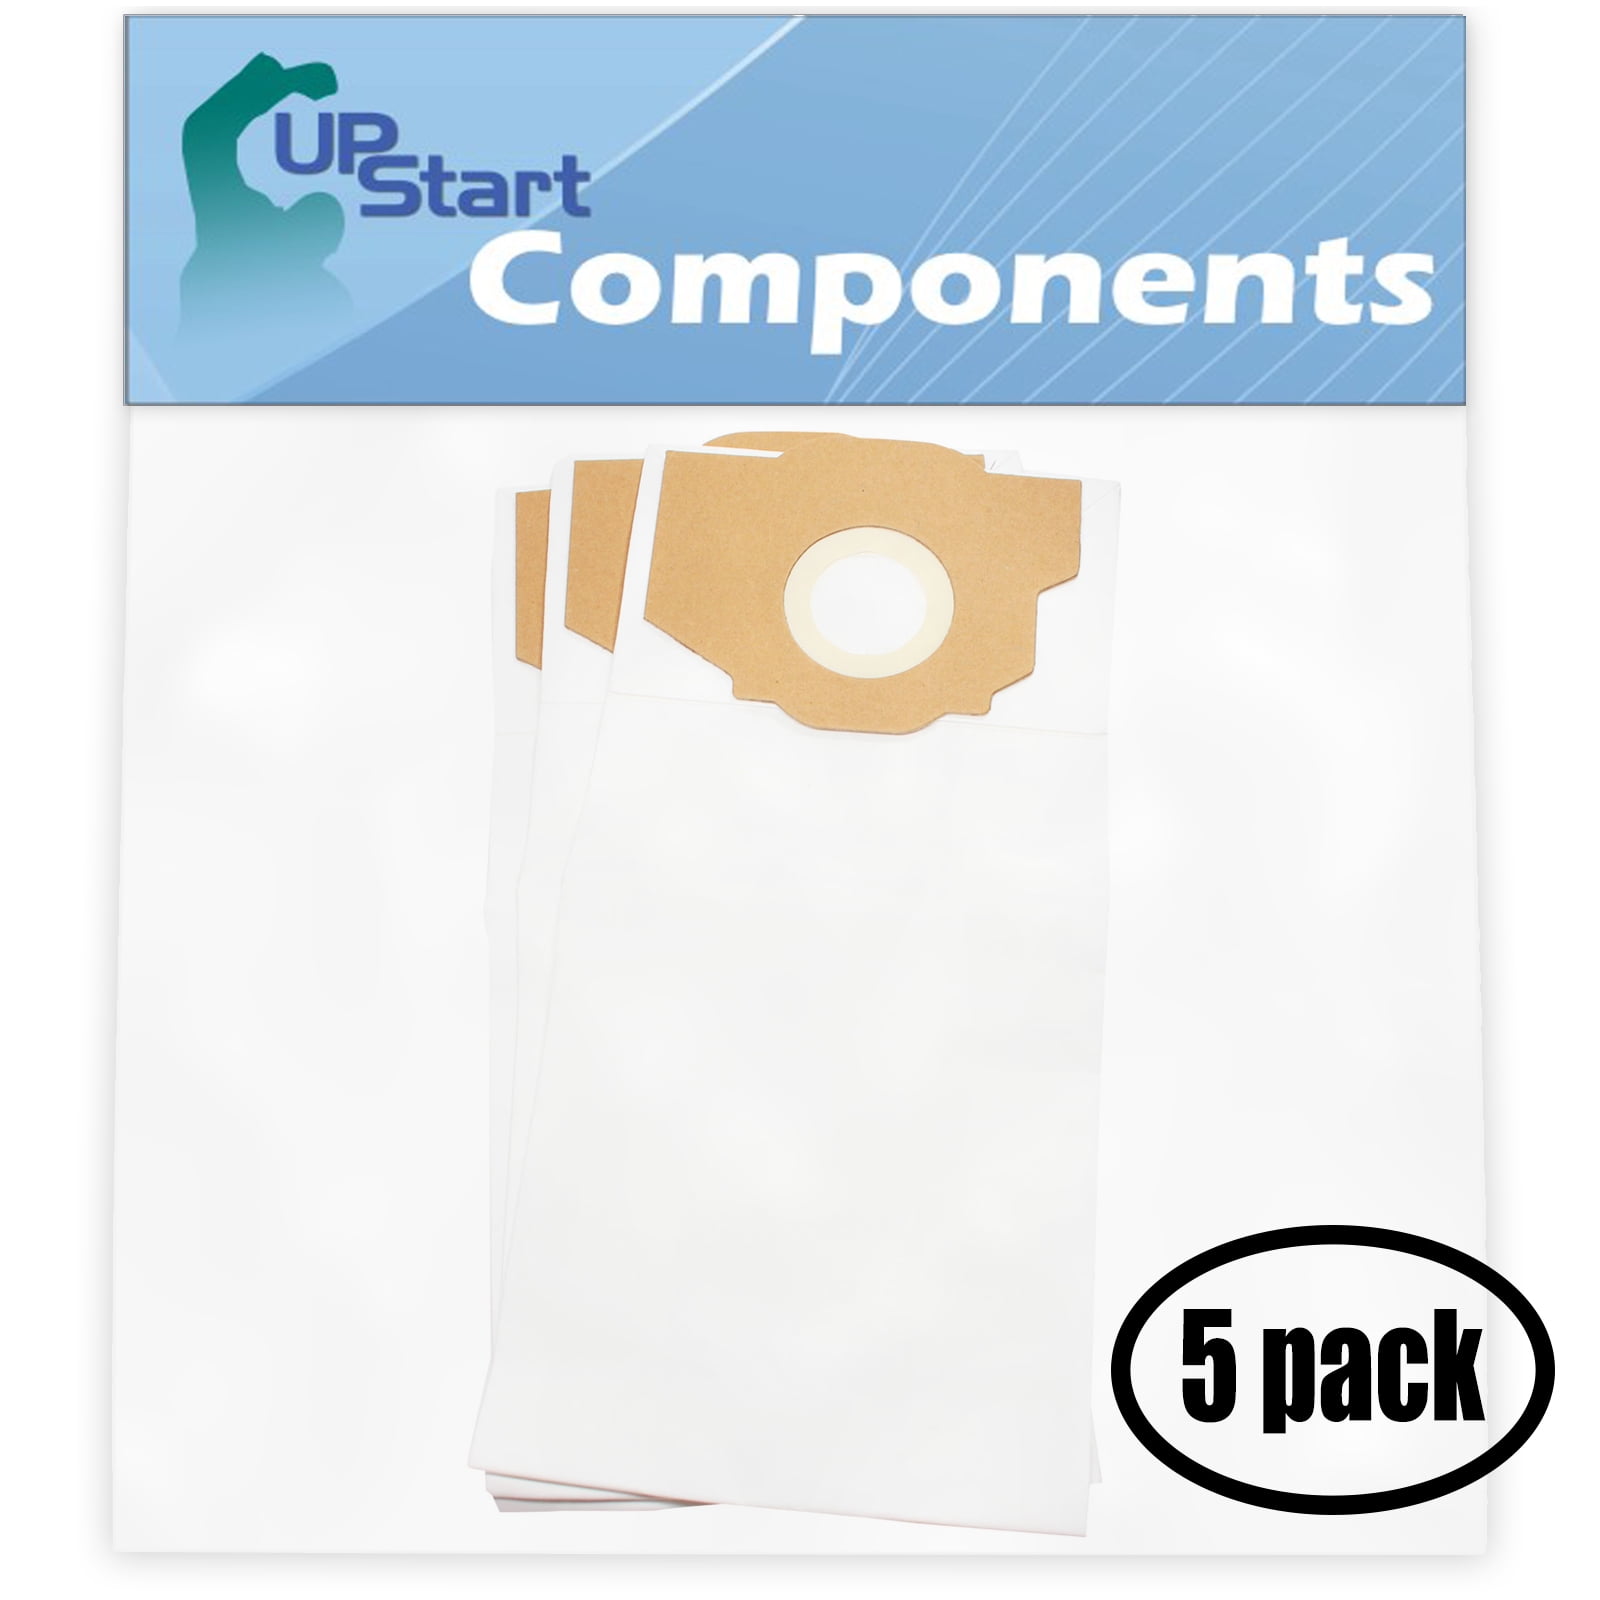 9 Pack RR Micro Filtered Vacuum Bags for Eureka Boss SmartVac 4800 #61115 